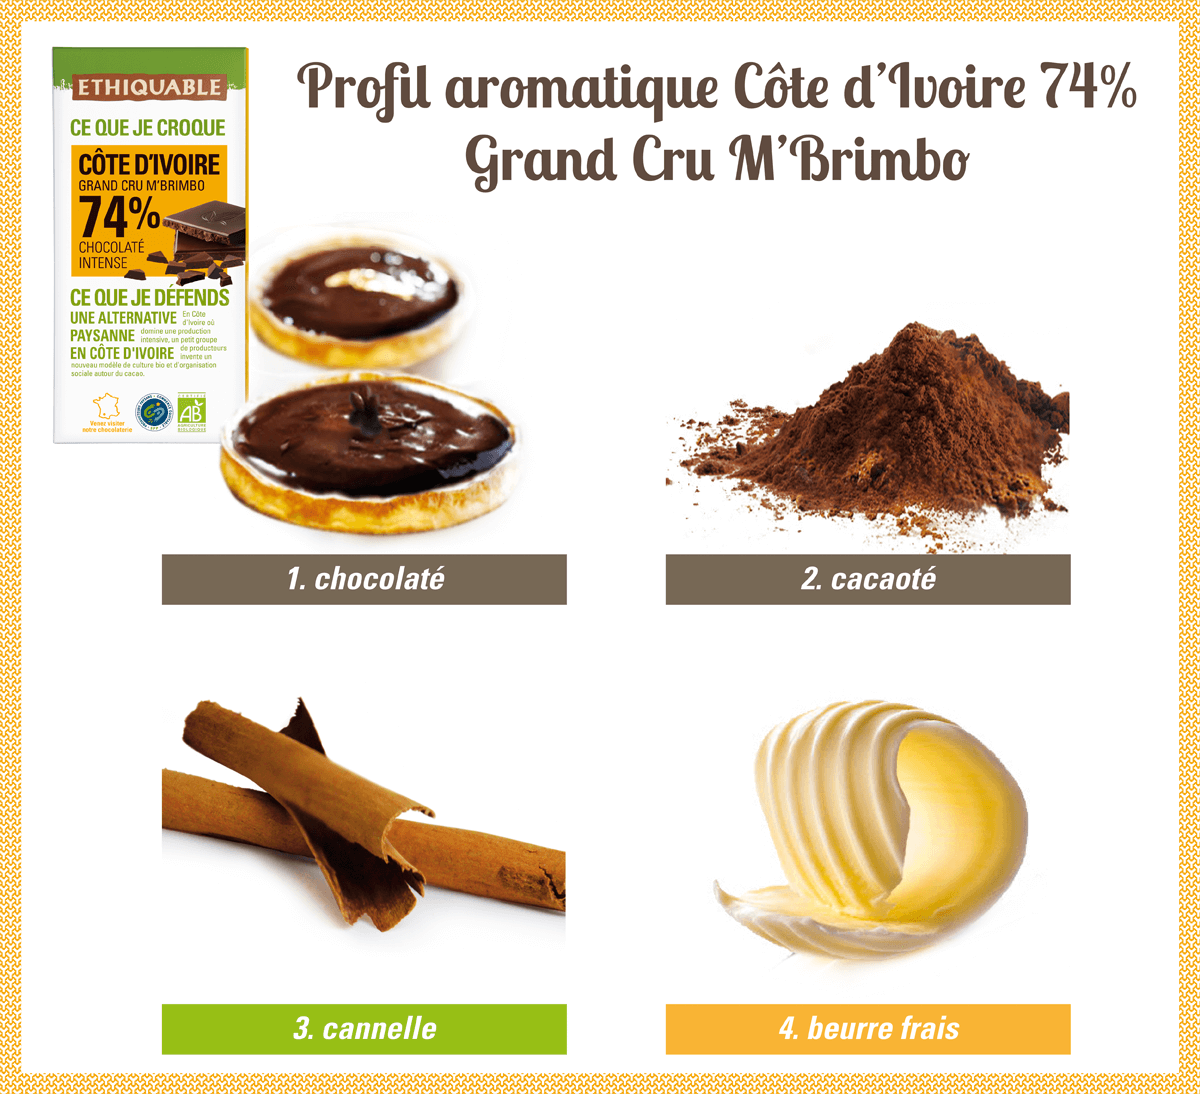 Profil aromatique chocolat noir 74% de cacao de Côte d'Ivoire Grand Cru M'Brimbo bio et équitable